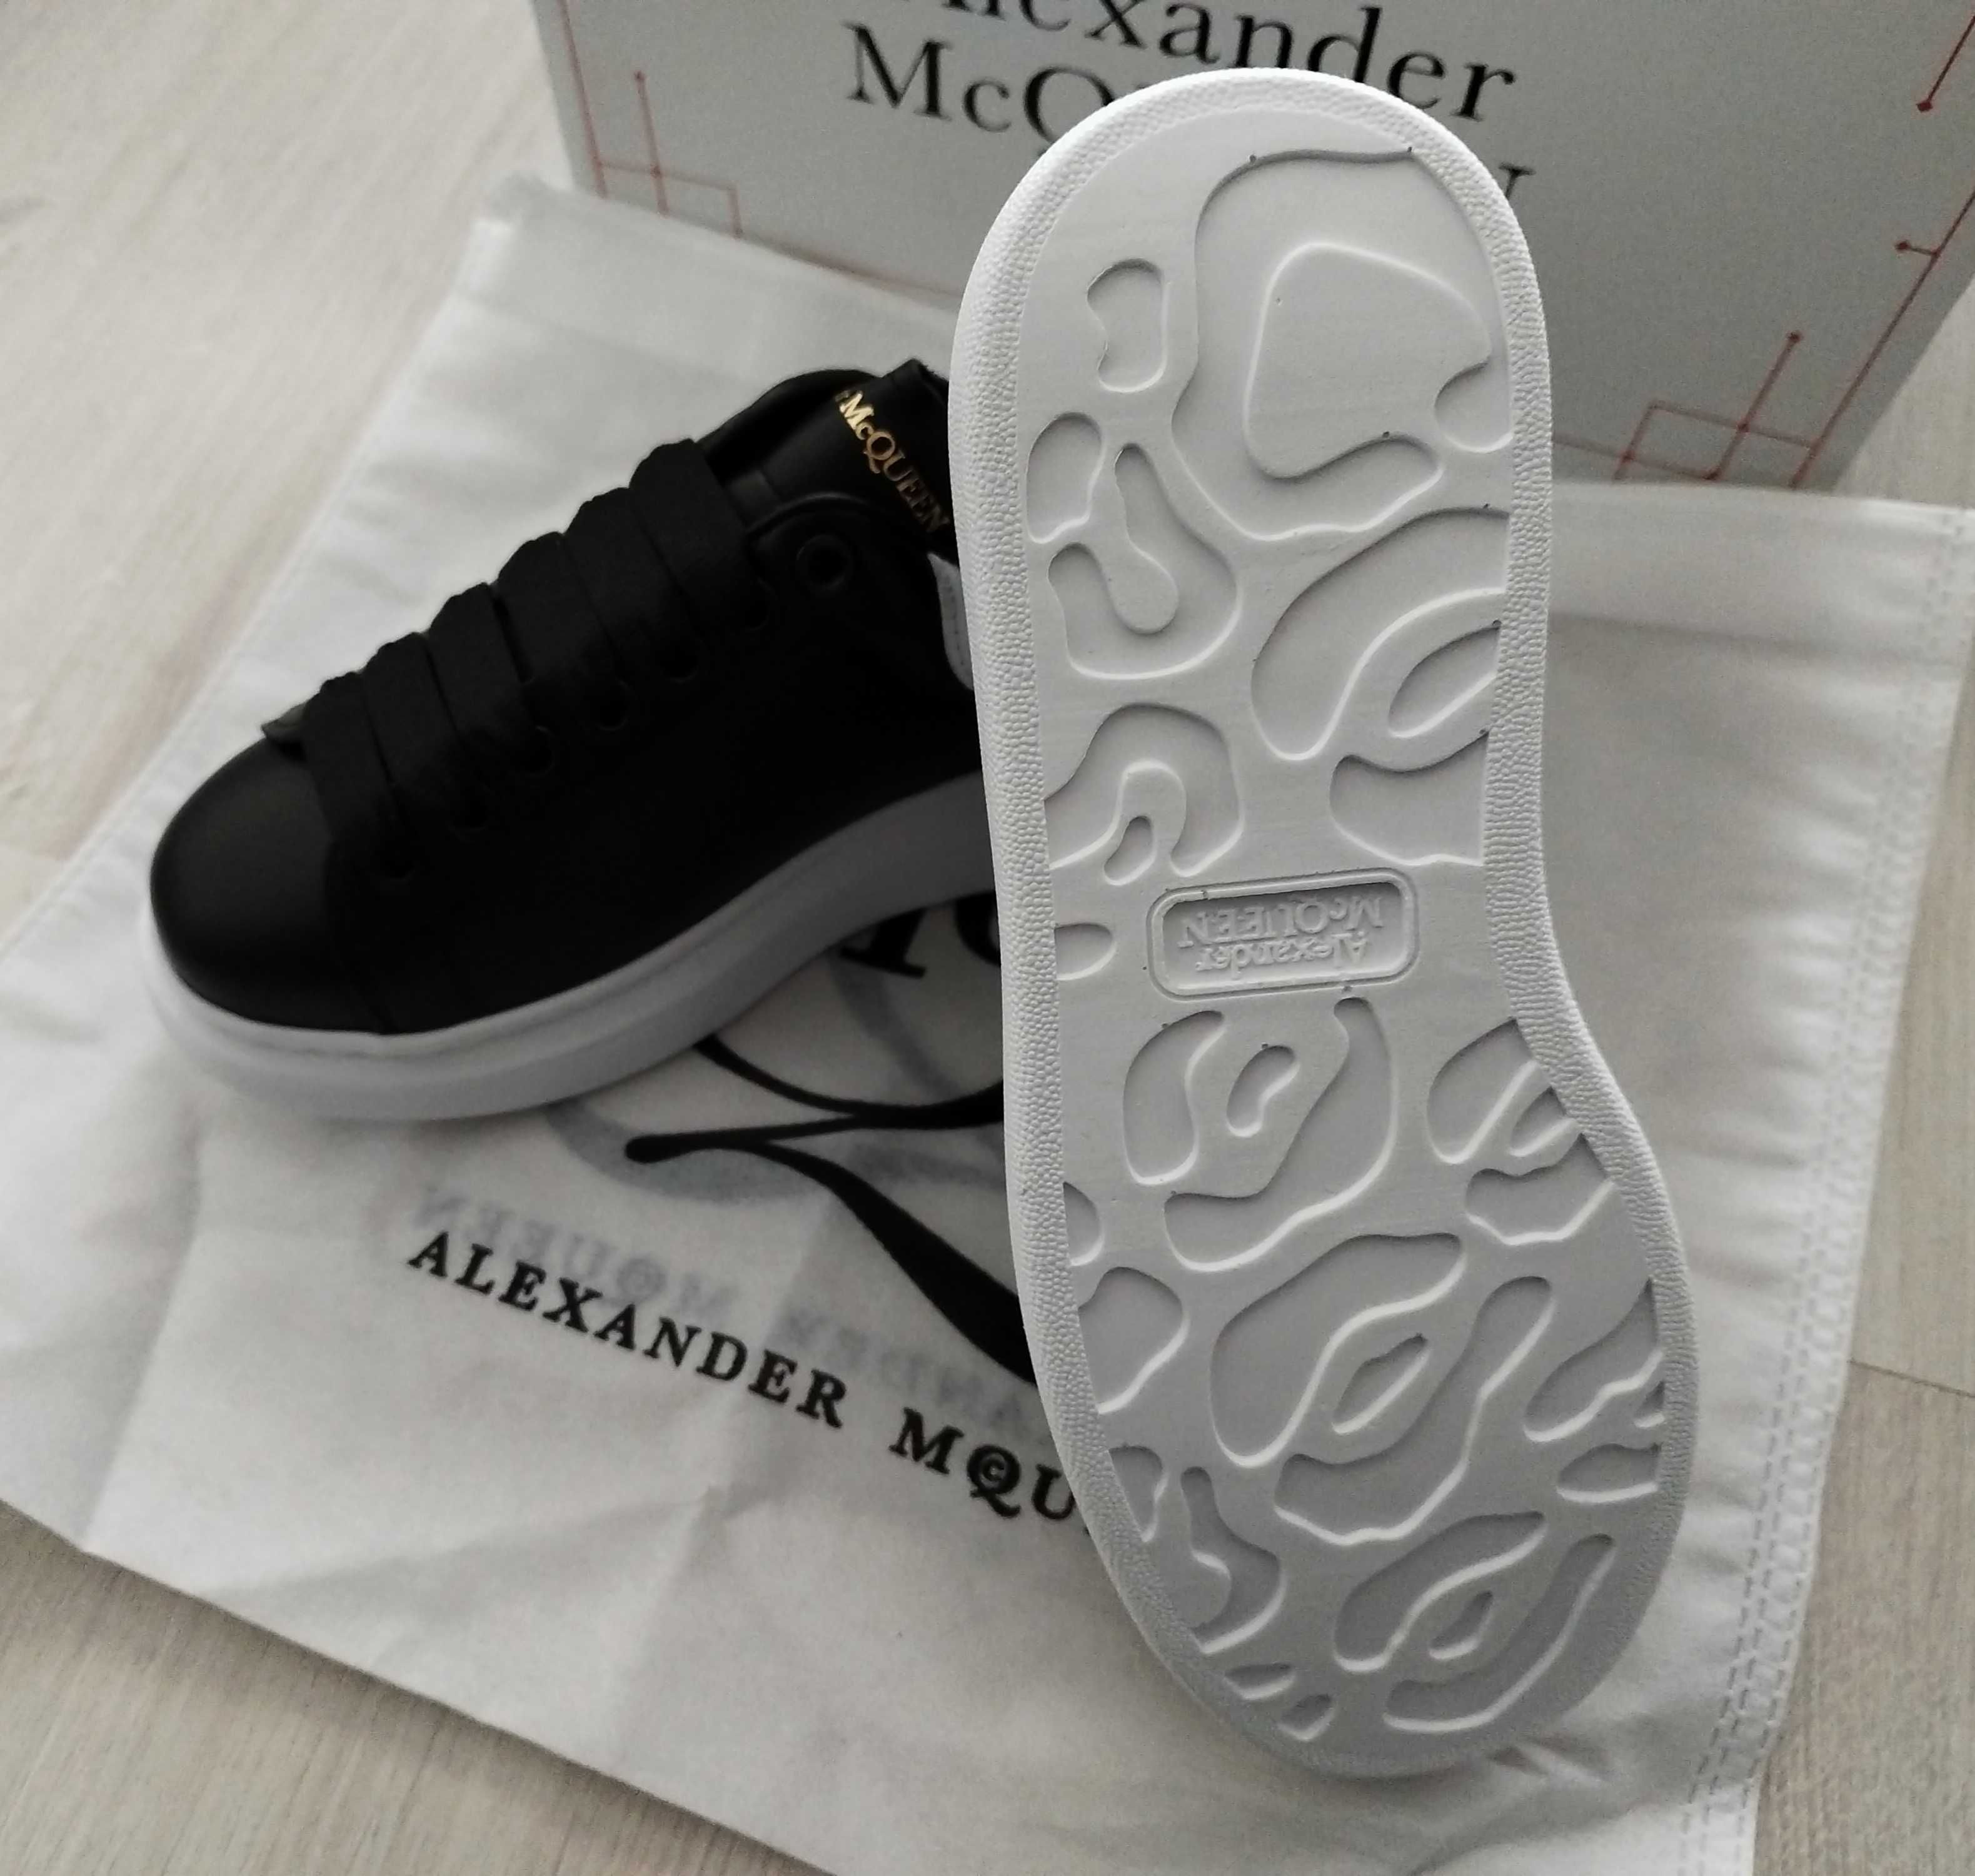 Дамски маратонки обувки женски модел Alexander McQueen истинск кожа